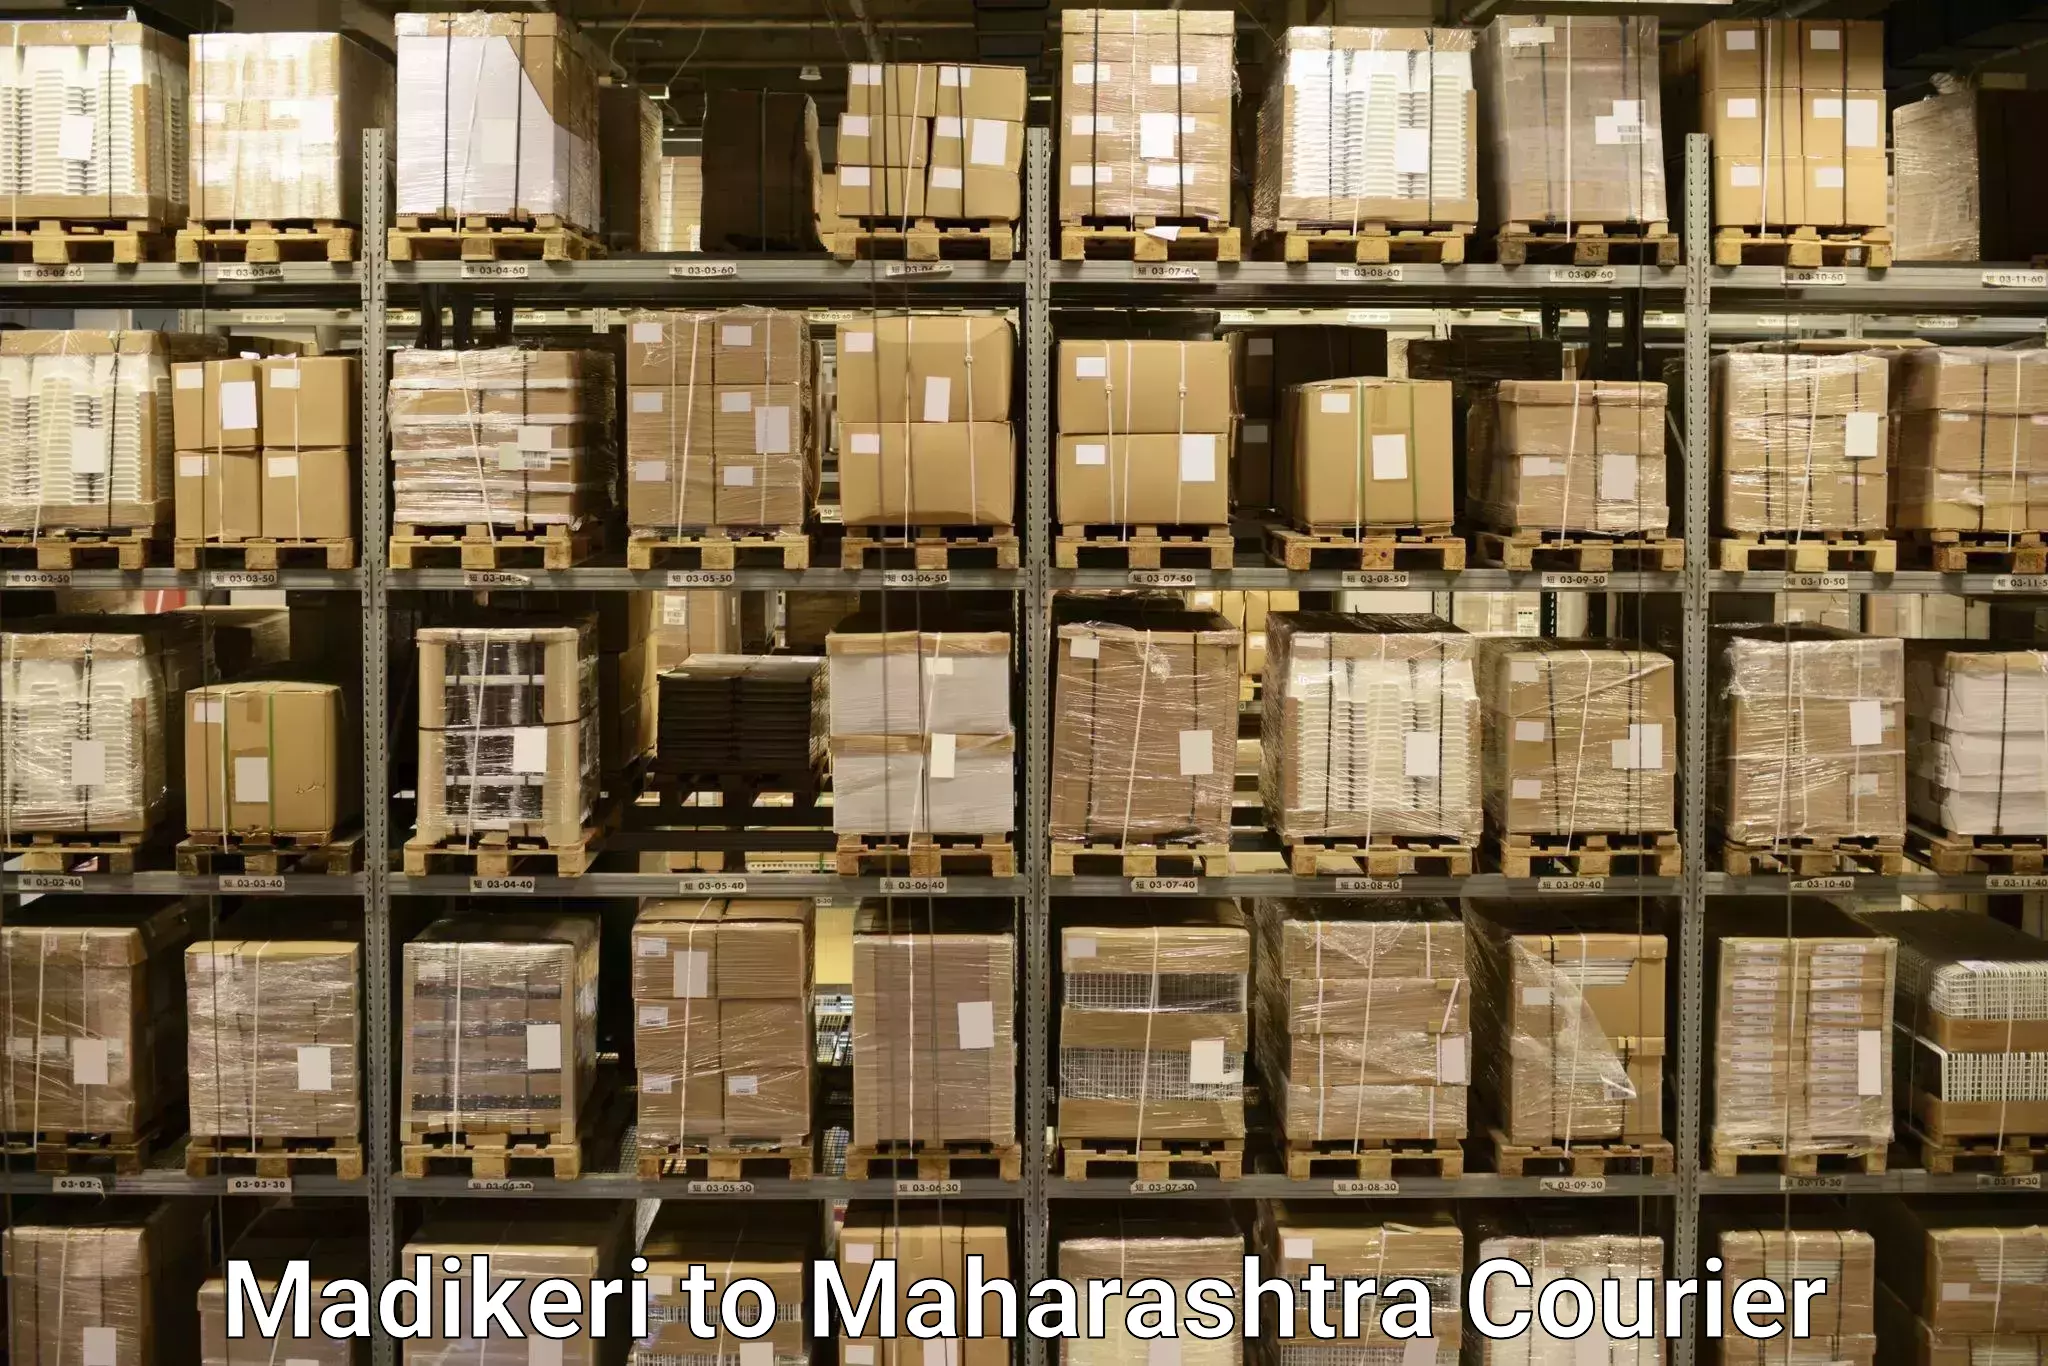 Luggage transport service Madikeri to Andheri